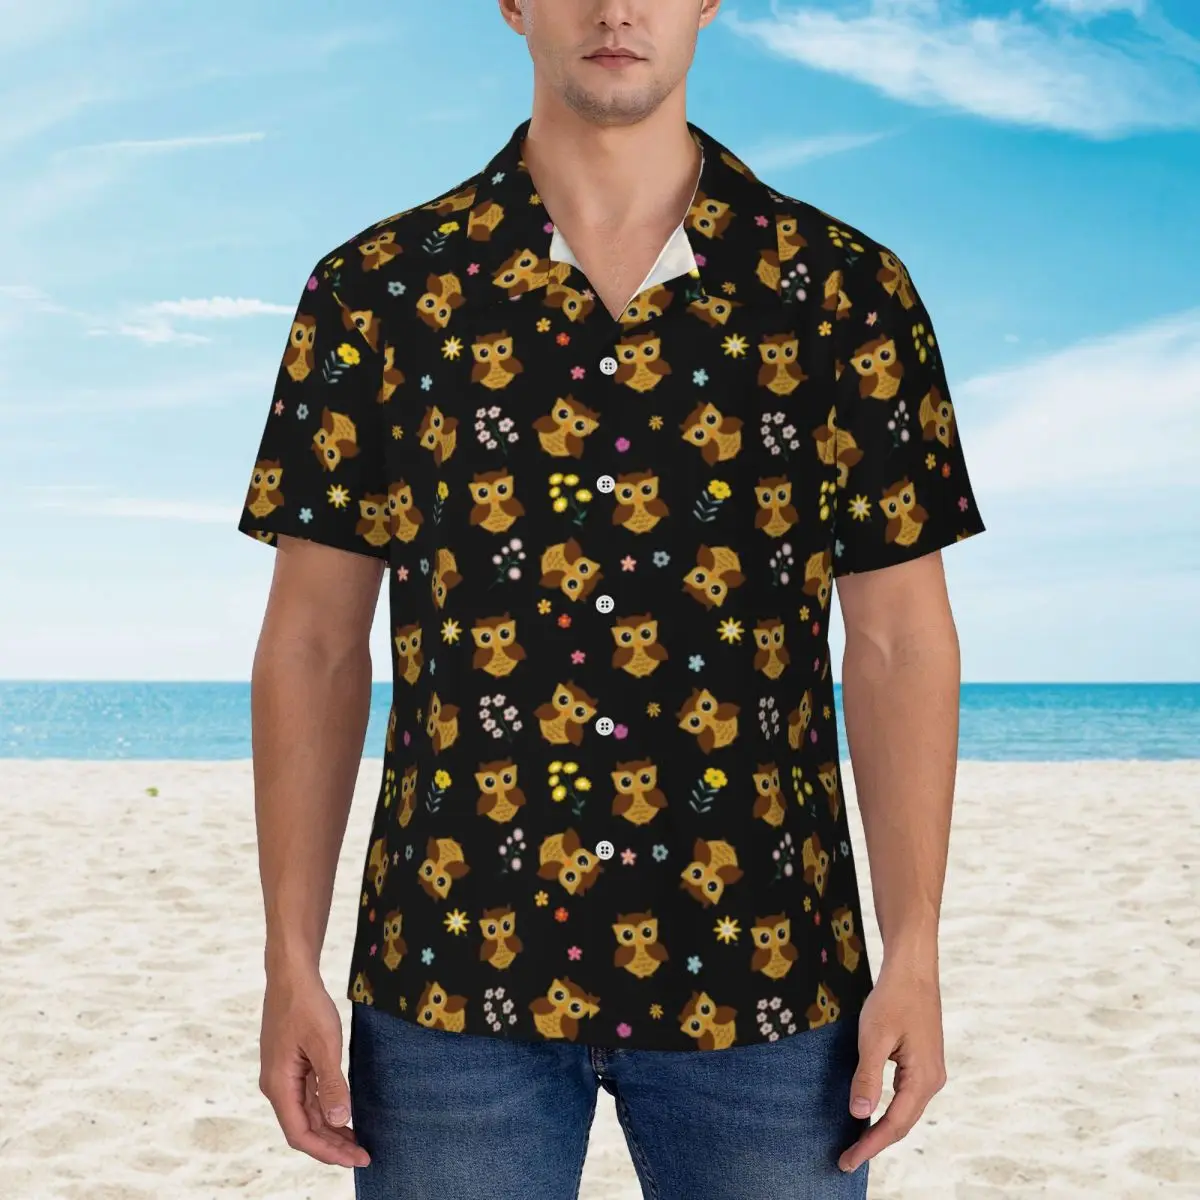 

Пляжная рубашка с принтом совы, мужские повседневные рубашки с милыми животными, гавайская классическая блузка большого размера с коротким рукавом и принтом, подарок